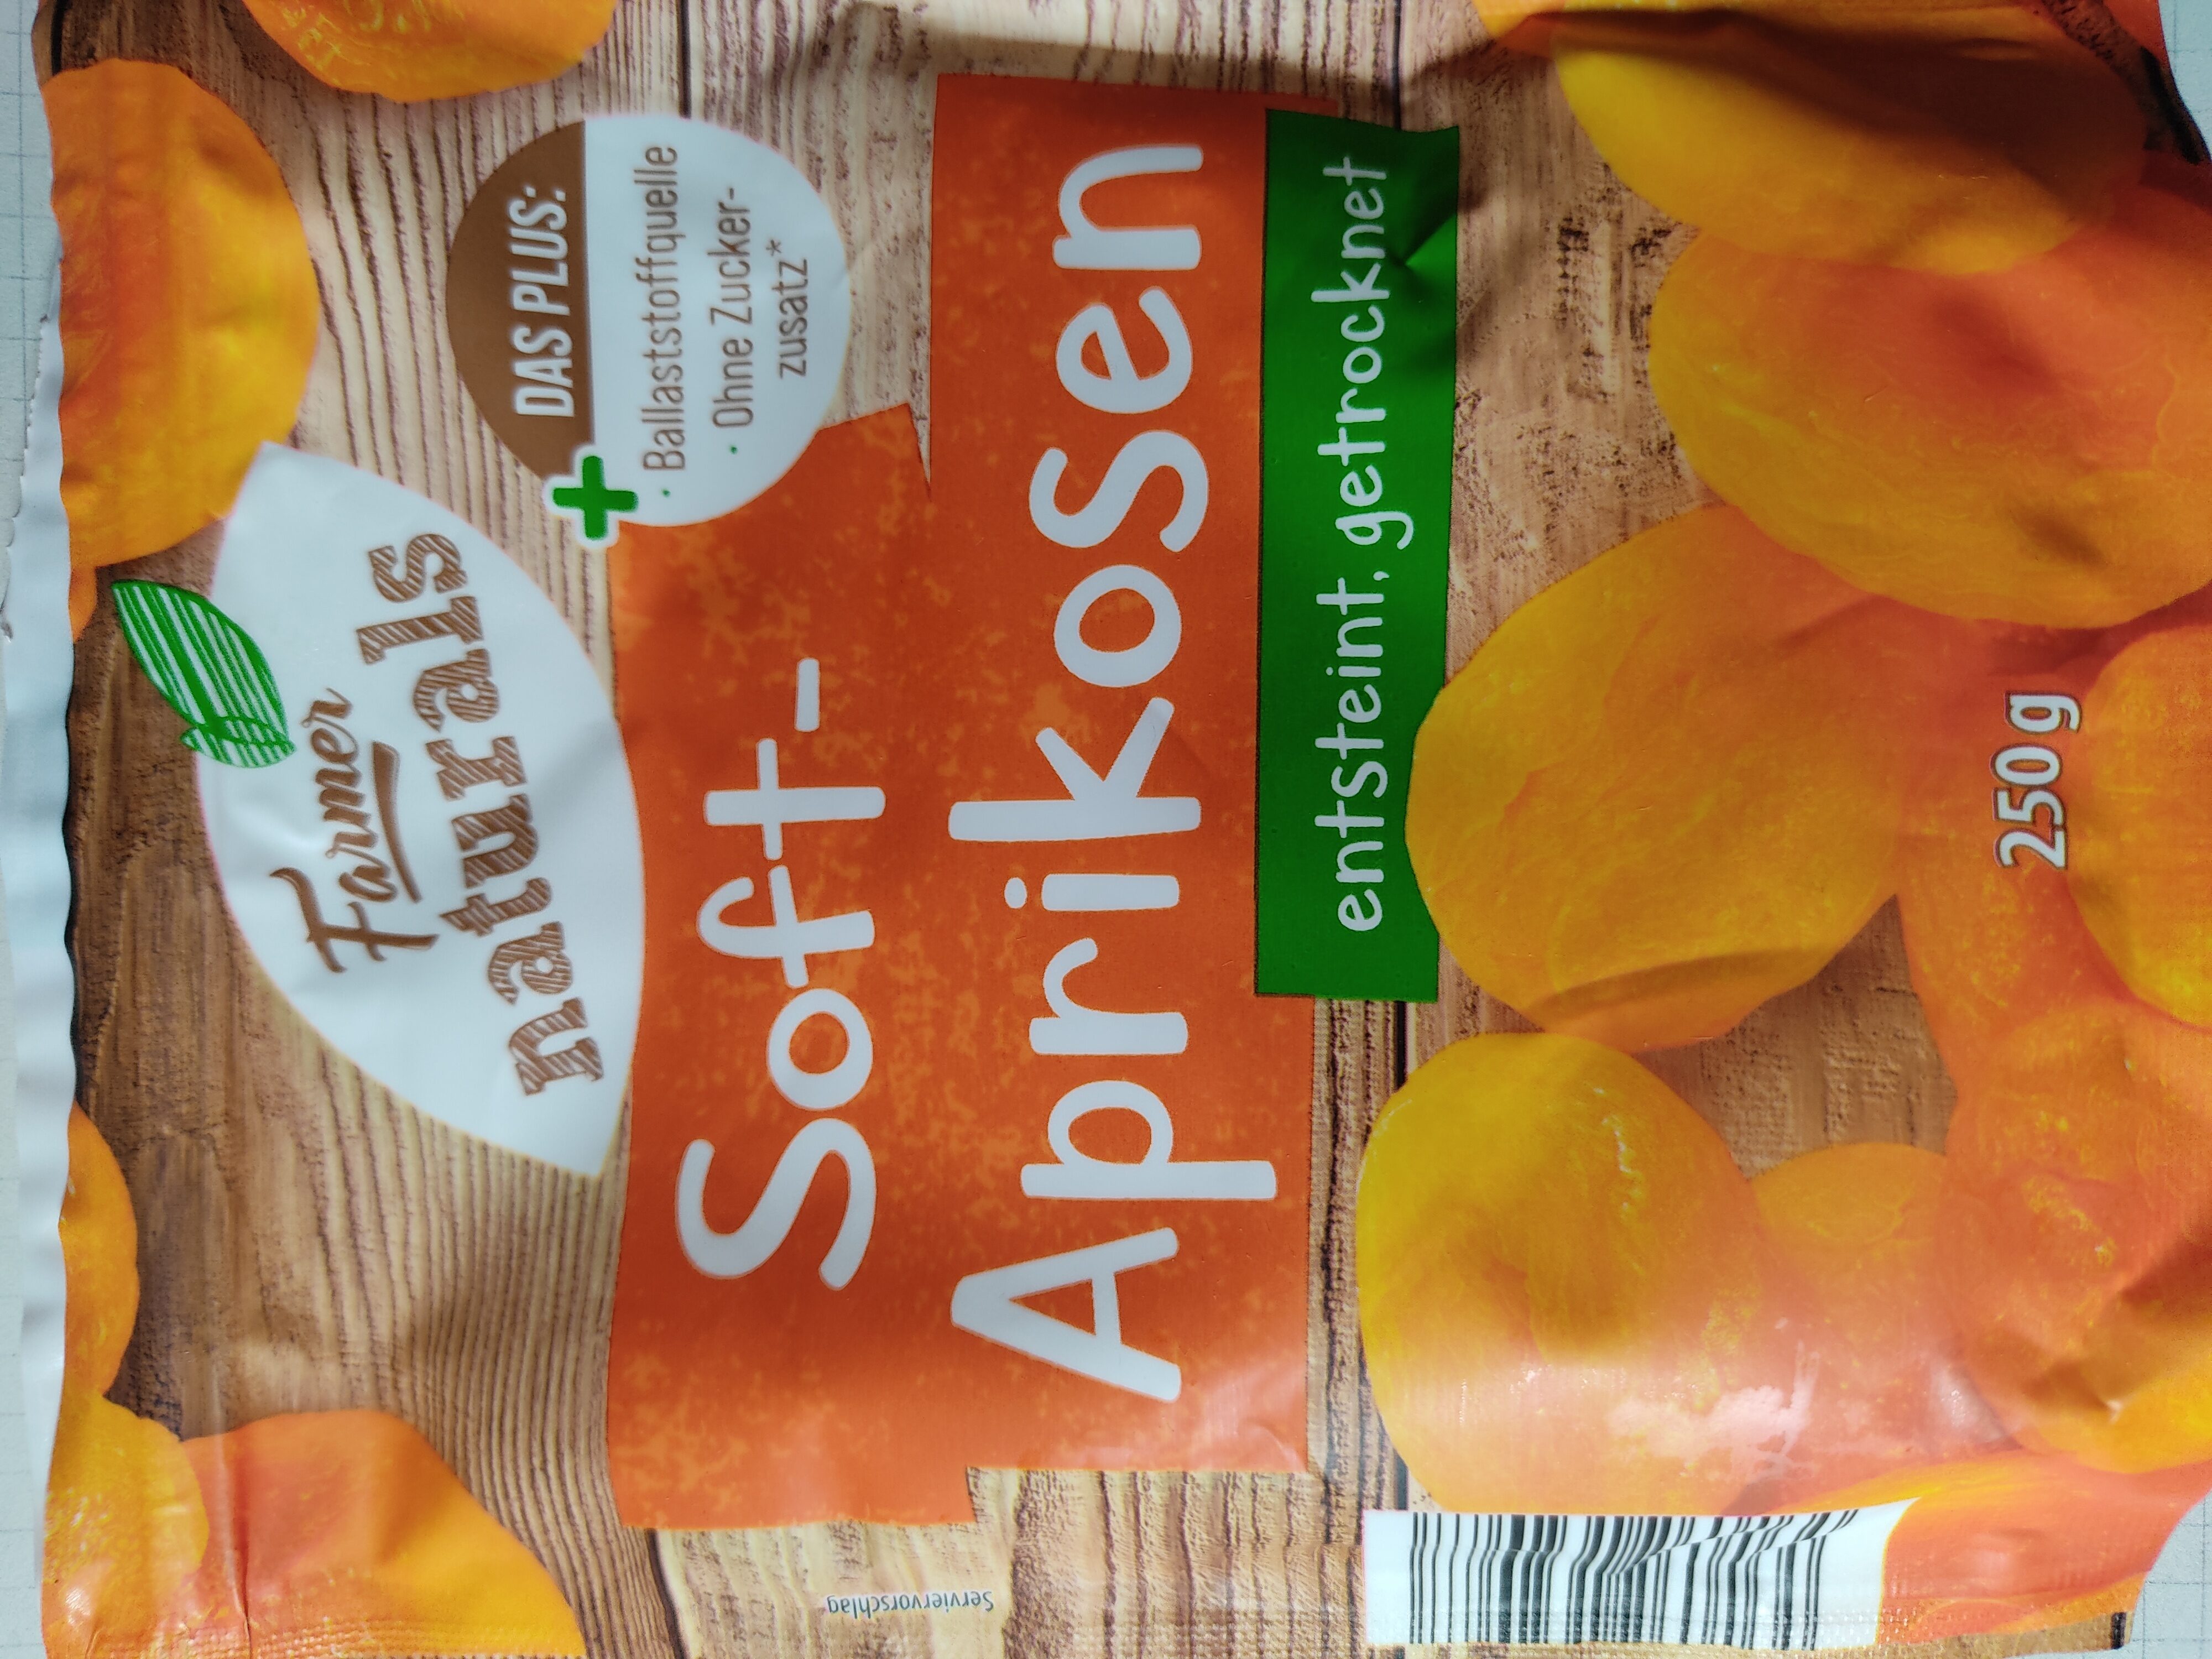 Soft-Aprikosen - Produkt